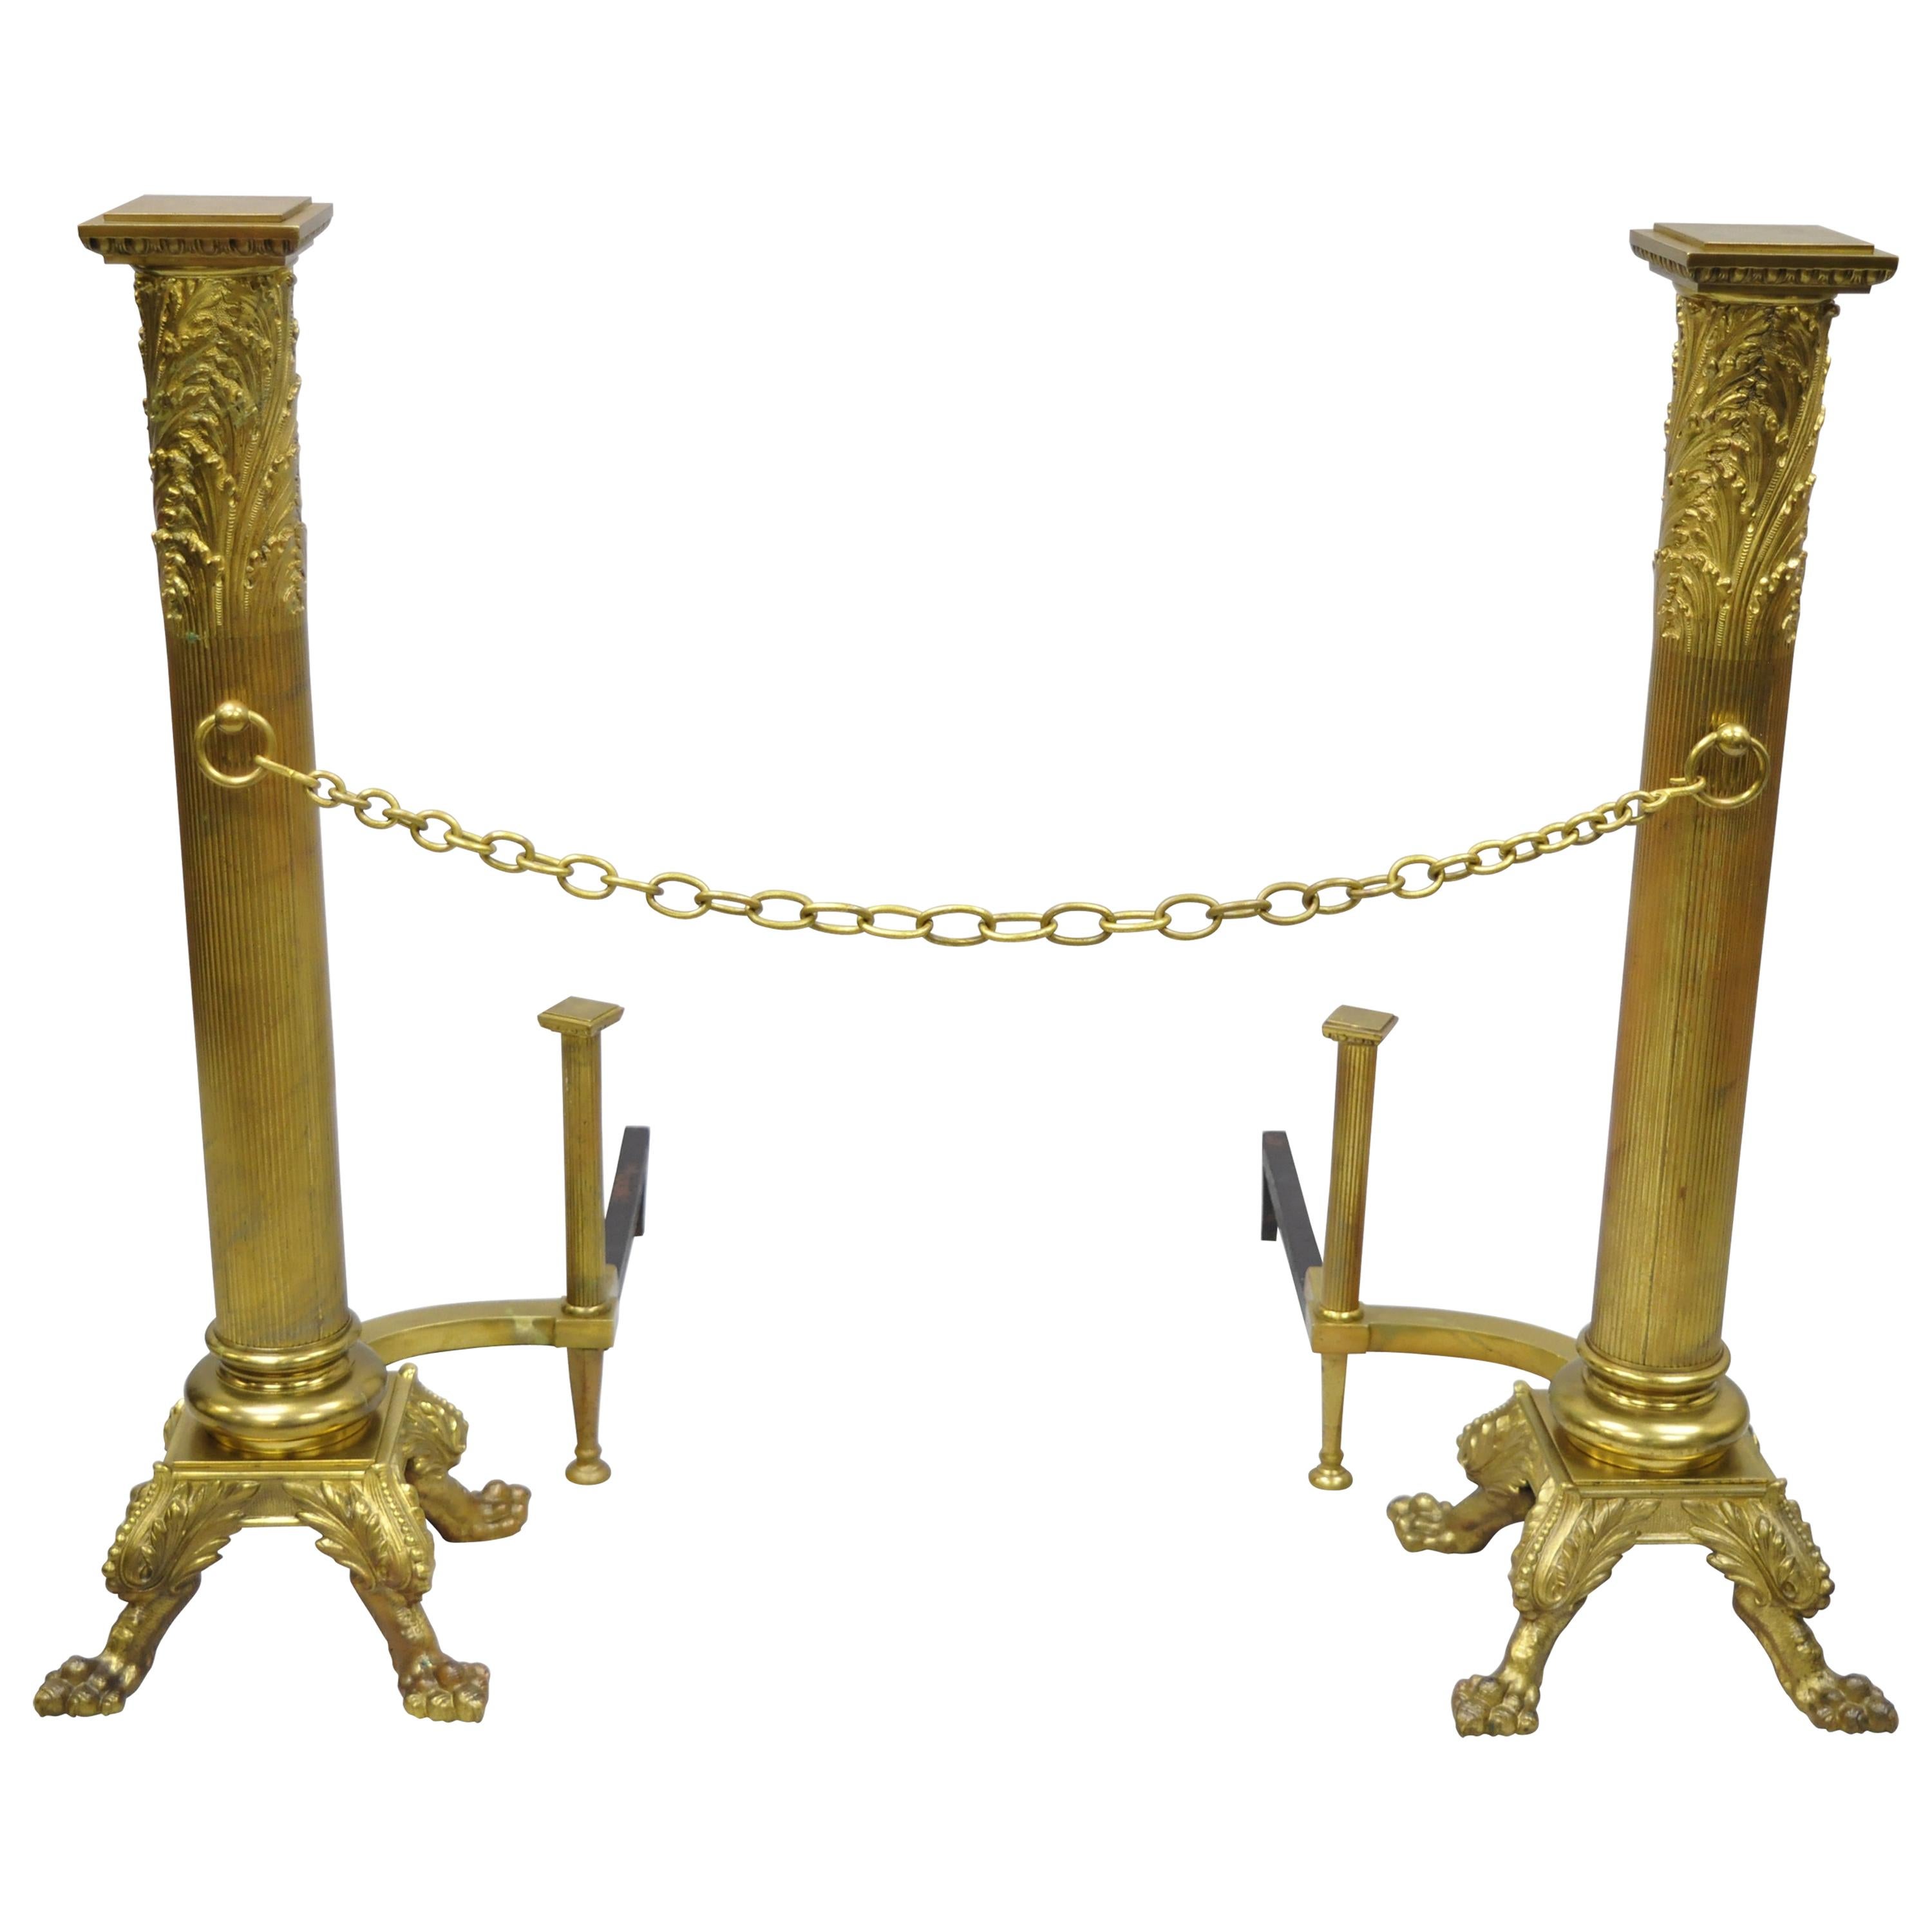 Grande paire de chandeliers Empire français en bronze à colonne avec pieds en patte d'oie